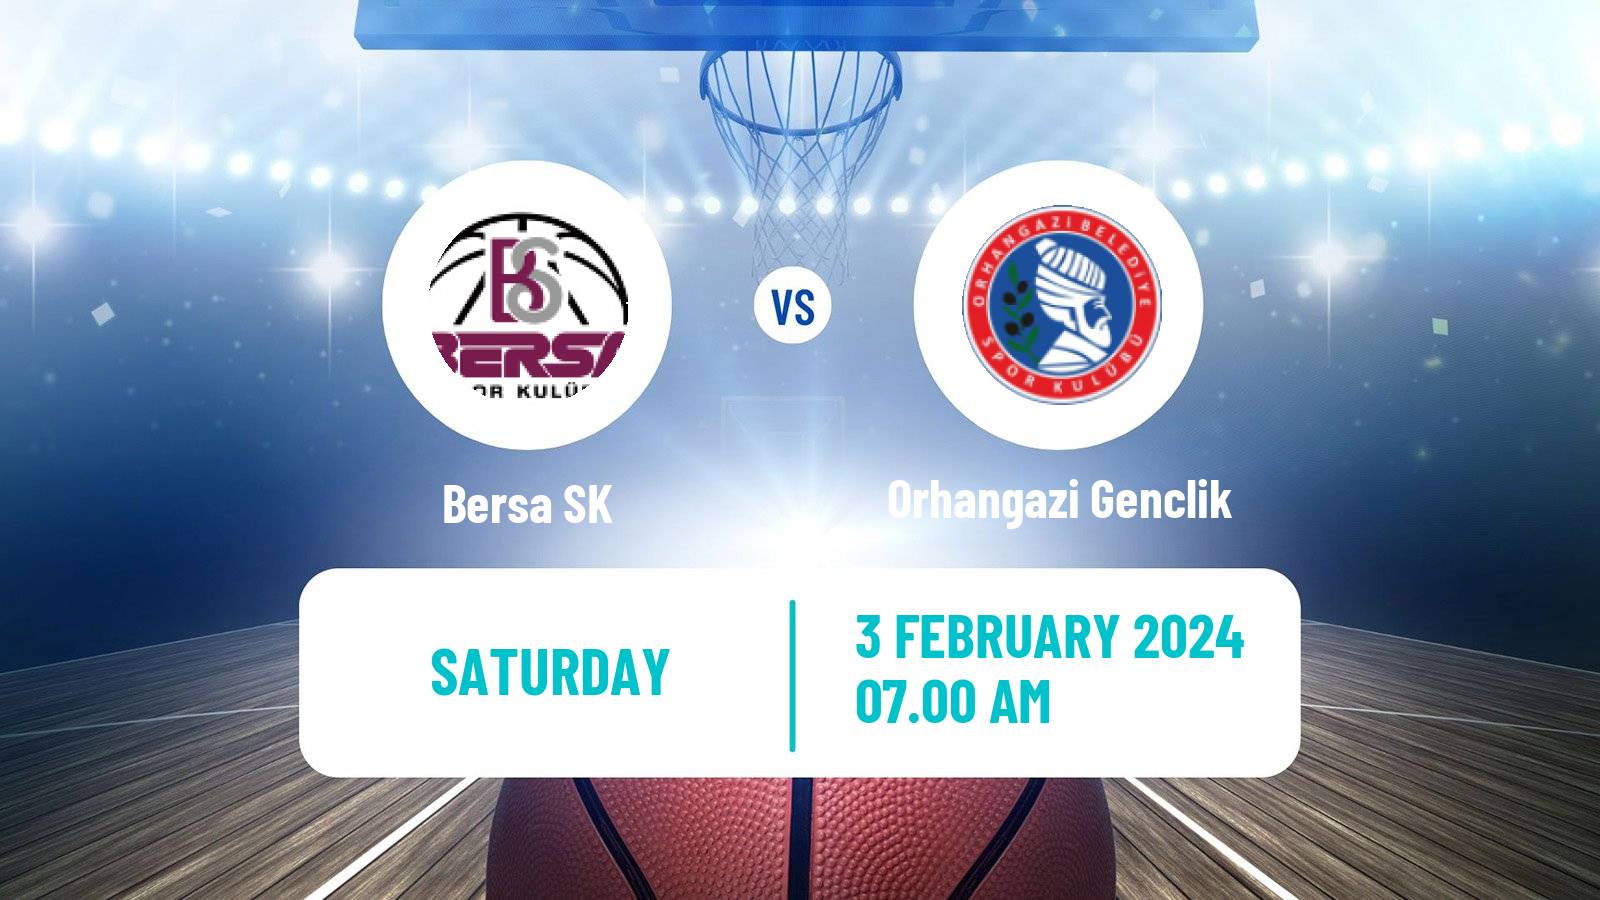 Basketball Turkish TB2L Bersa - Orhangazi Genclik